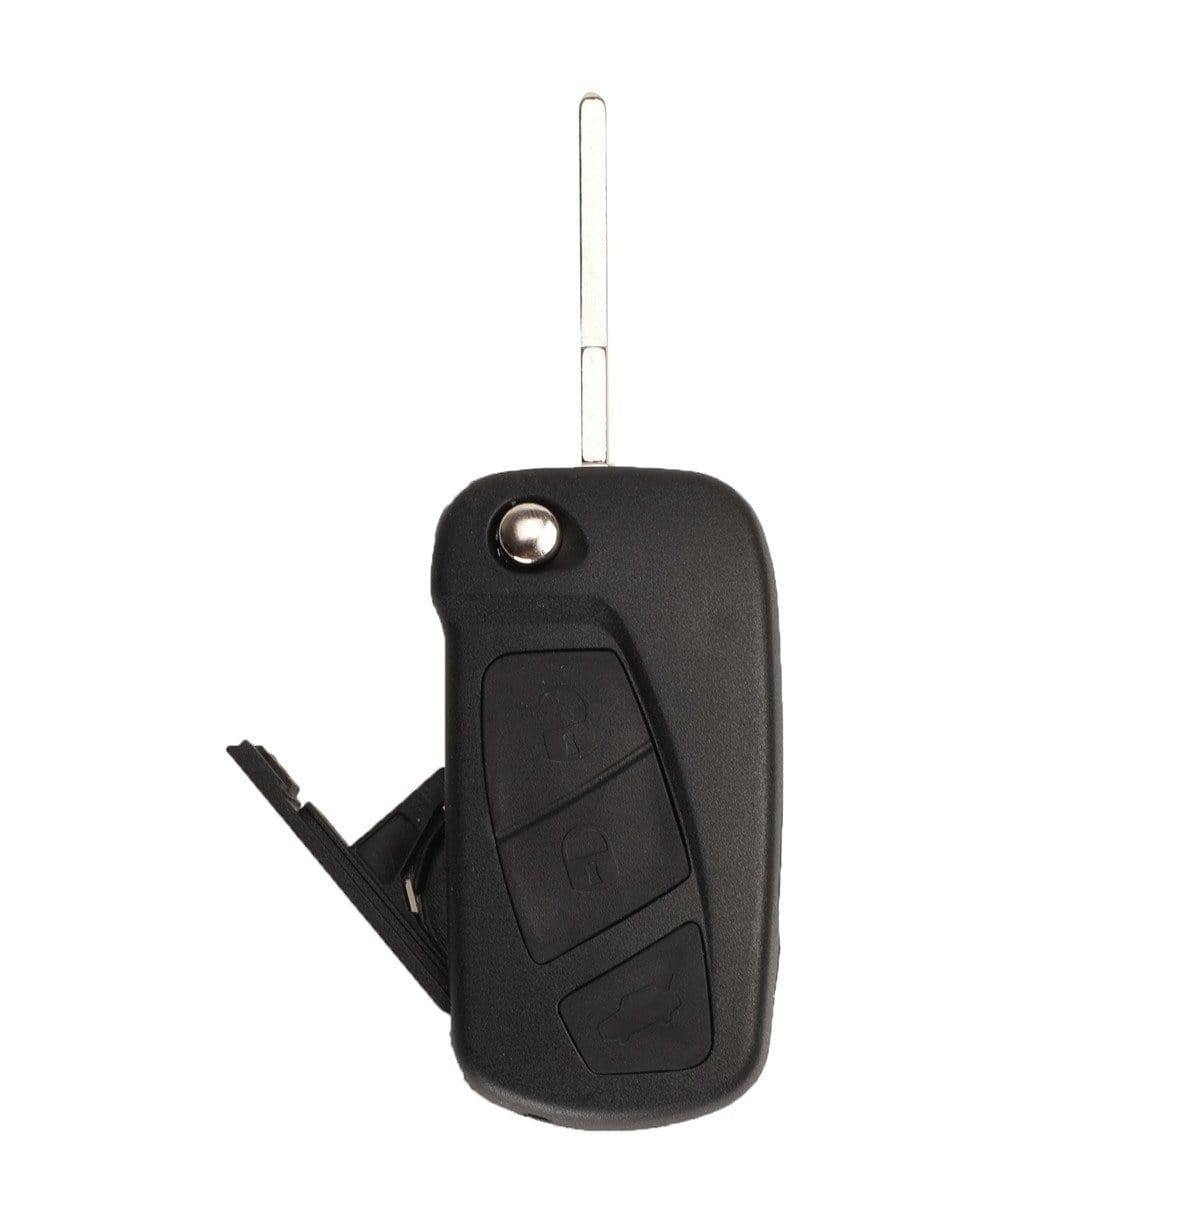 Fekete színű, 2 gombos Peugeot kulcsház, bicskakulcs SIP22 kulcsszárral.